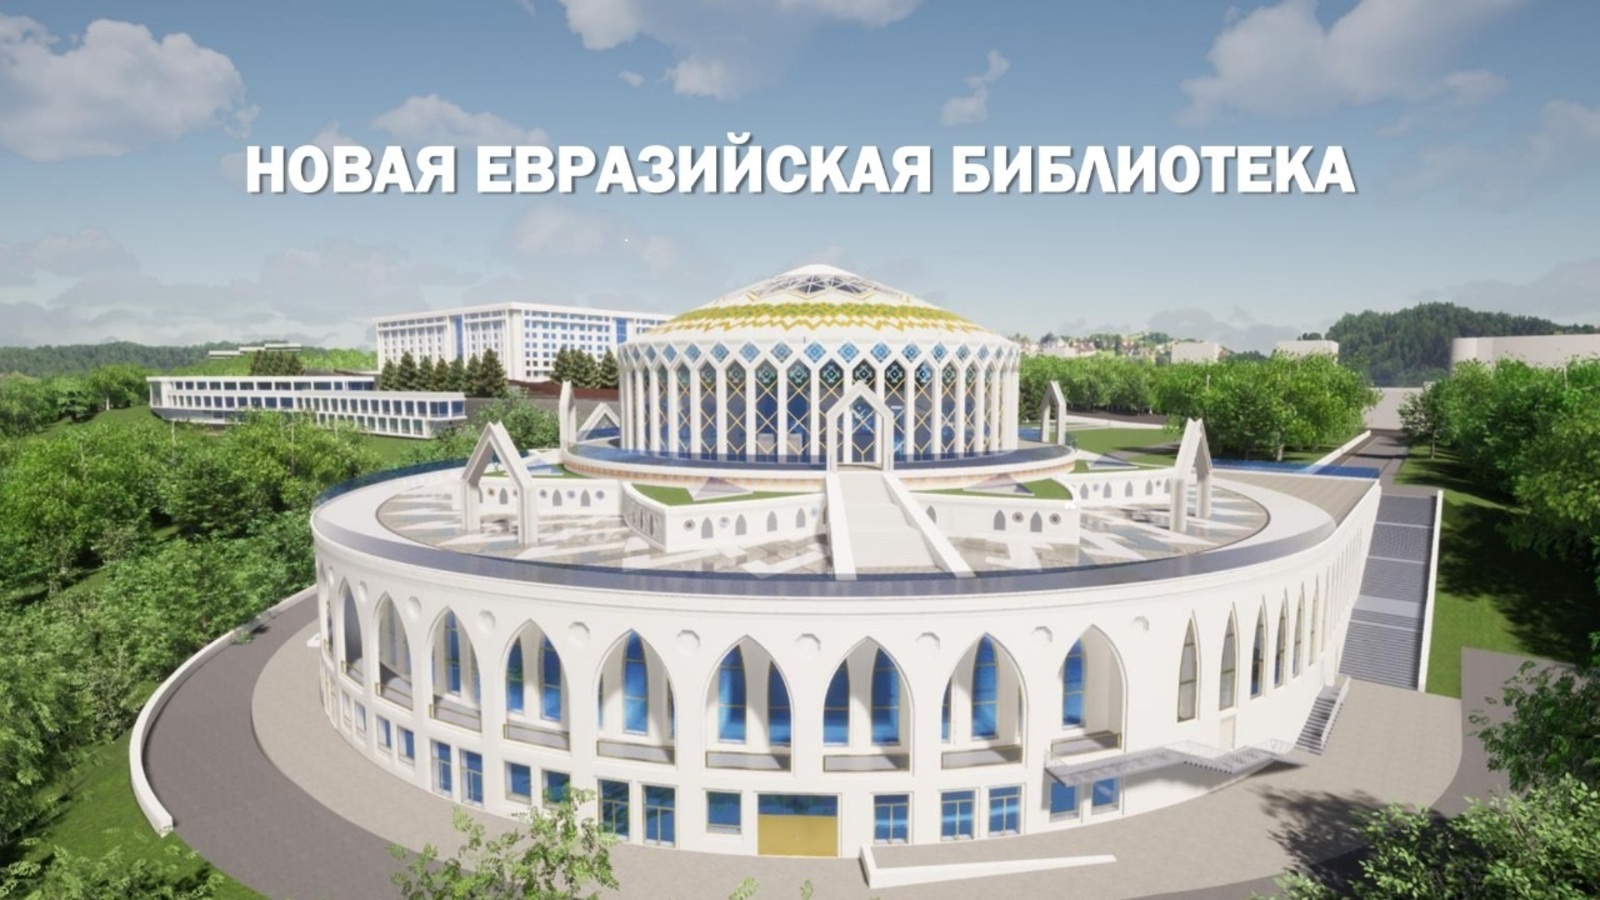 Николай Морозкин: Евразийская библиотека будет служить всем, кто жаждет заниматься наукой